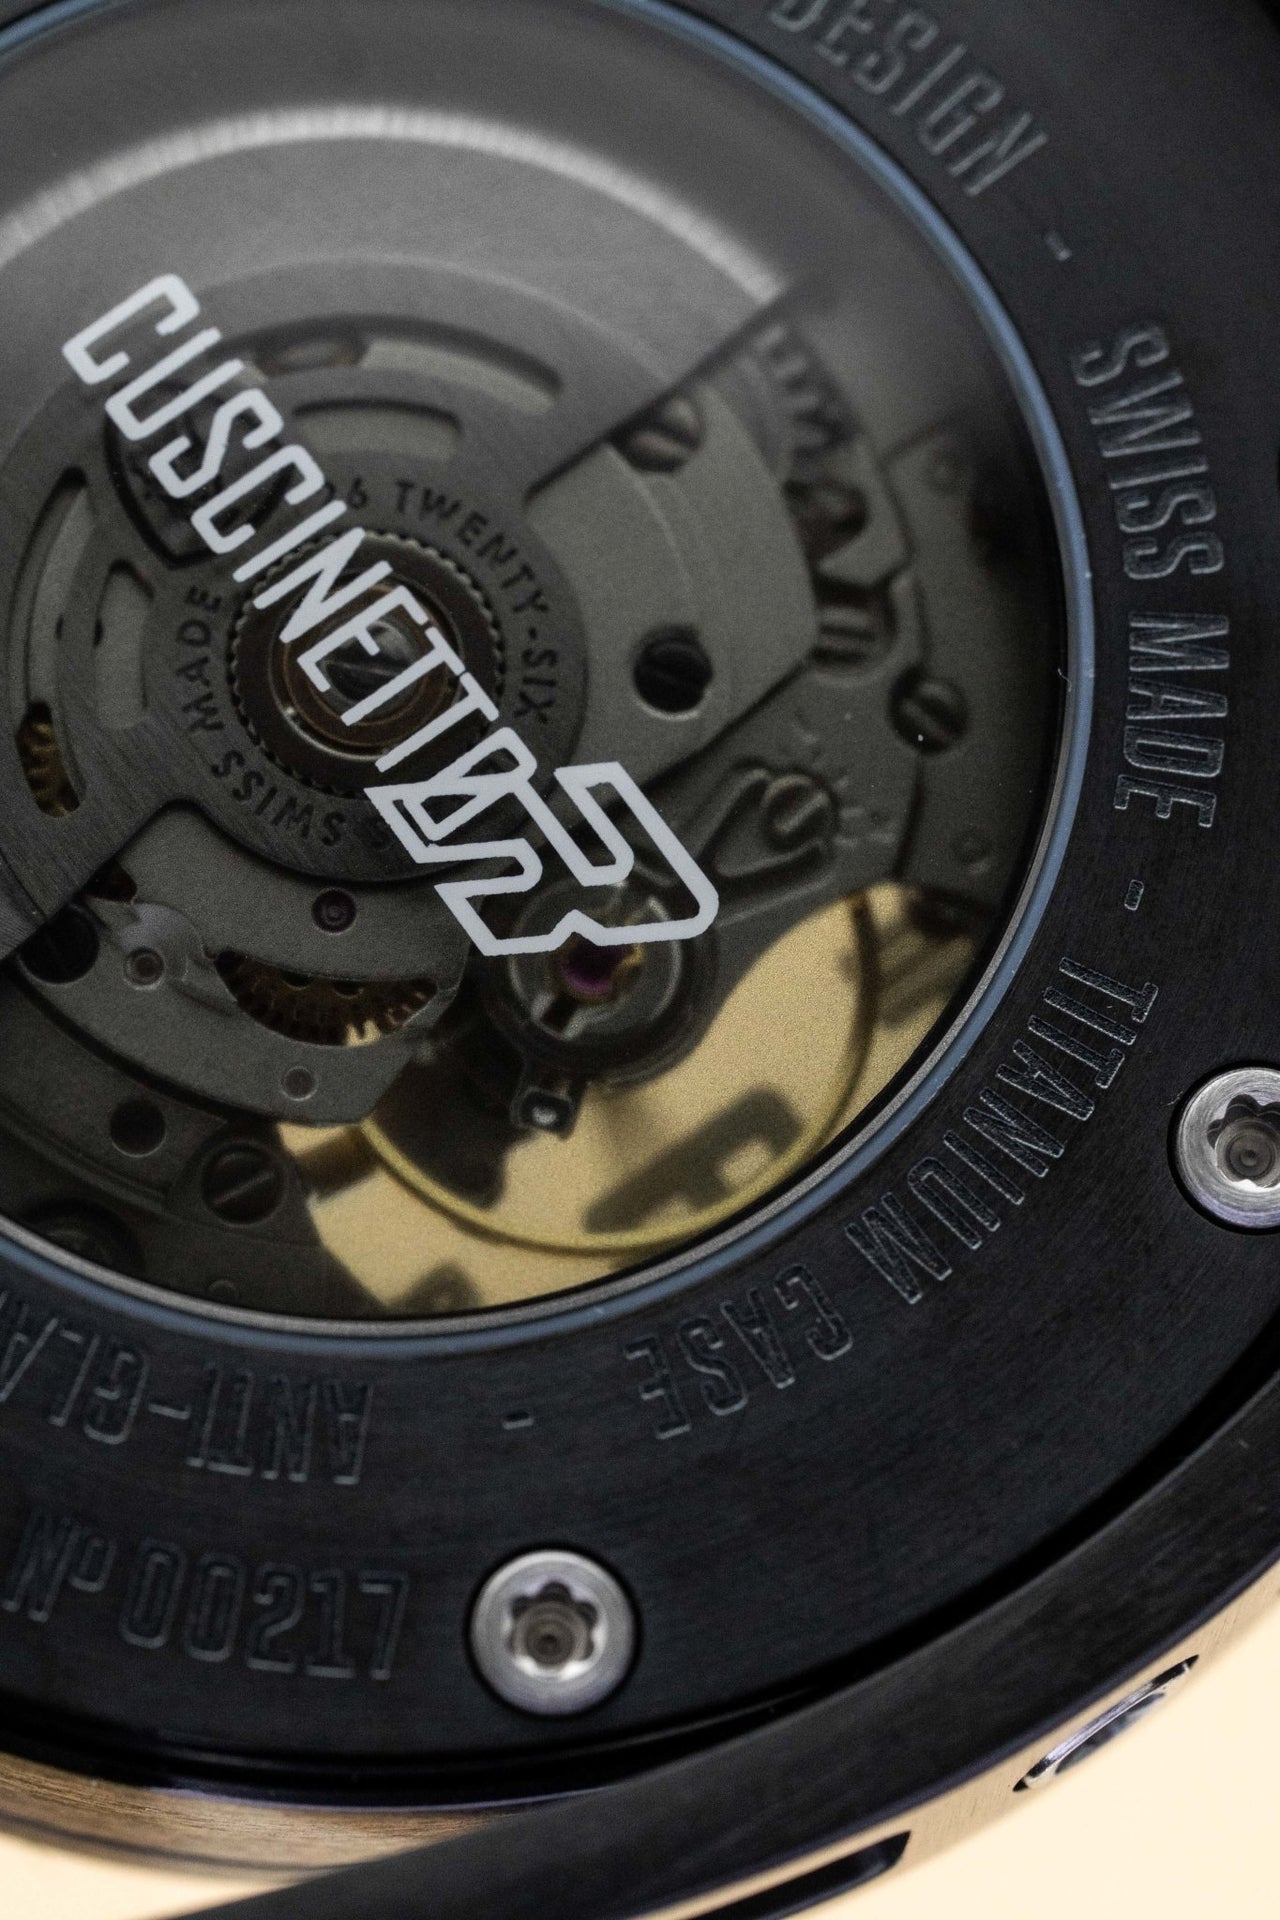 Tonino Lamborghini Cuscinetto R Blue - Watches & Crystals